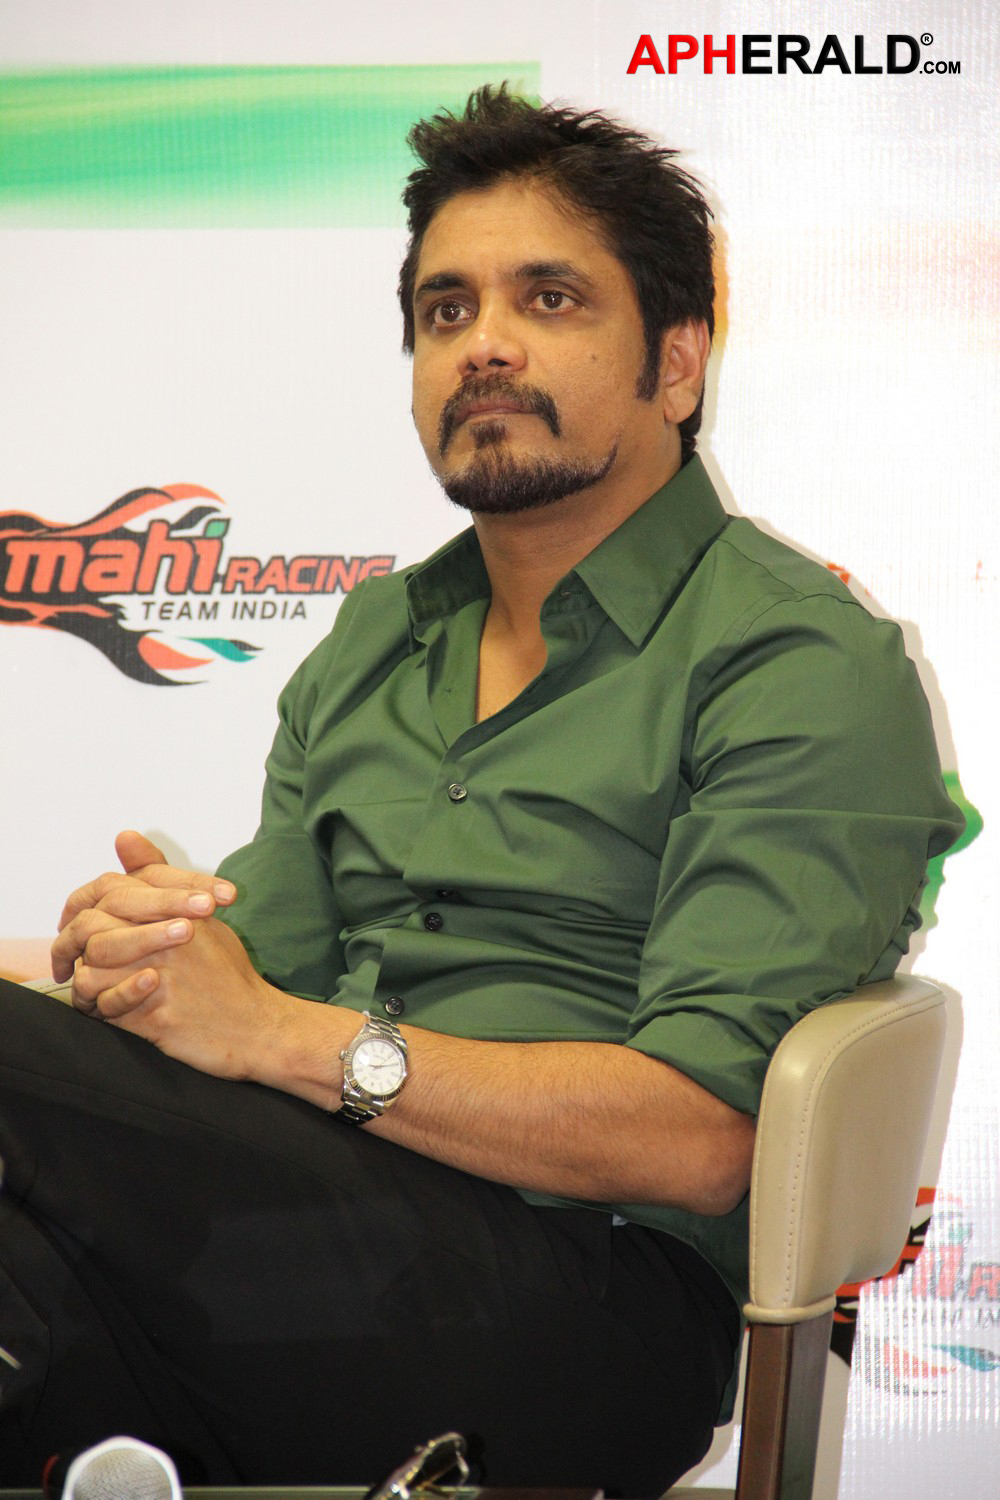 Akkineni Nagarjuna Mahi Racing Team India Press Meet